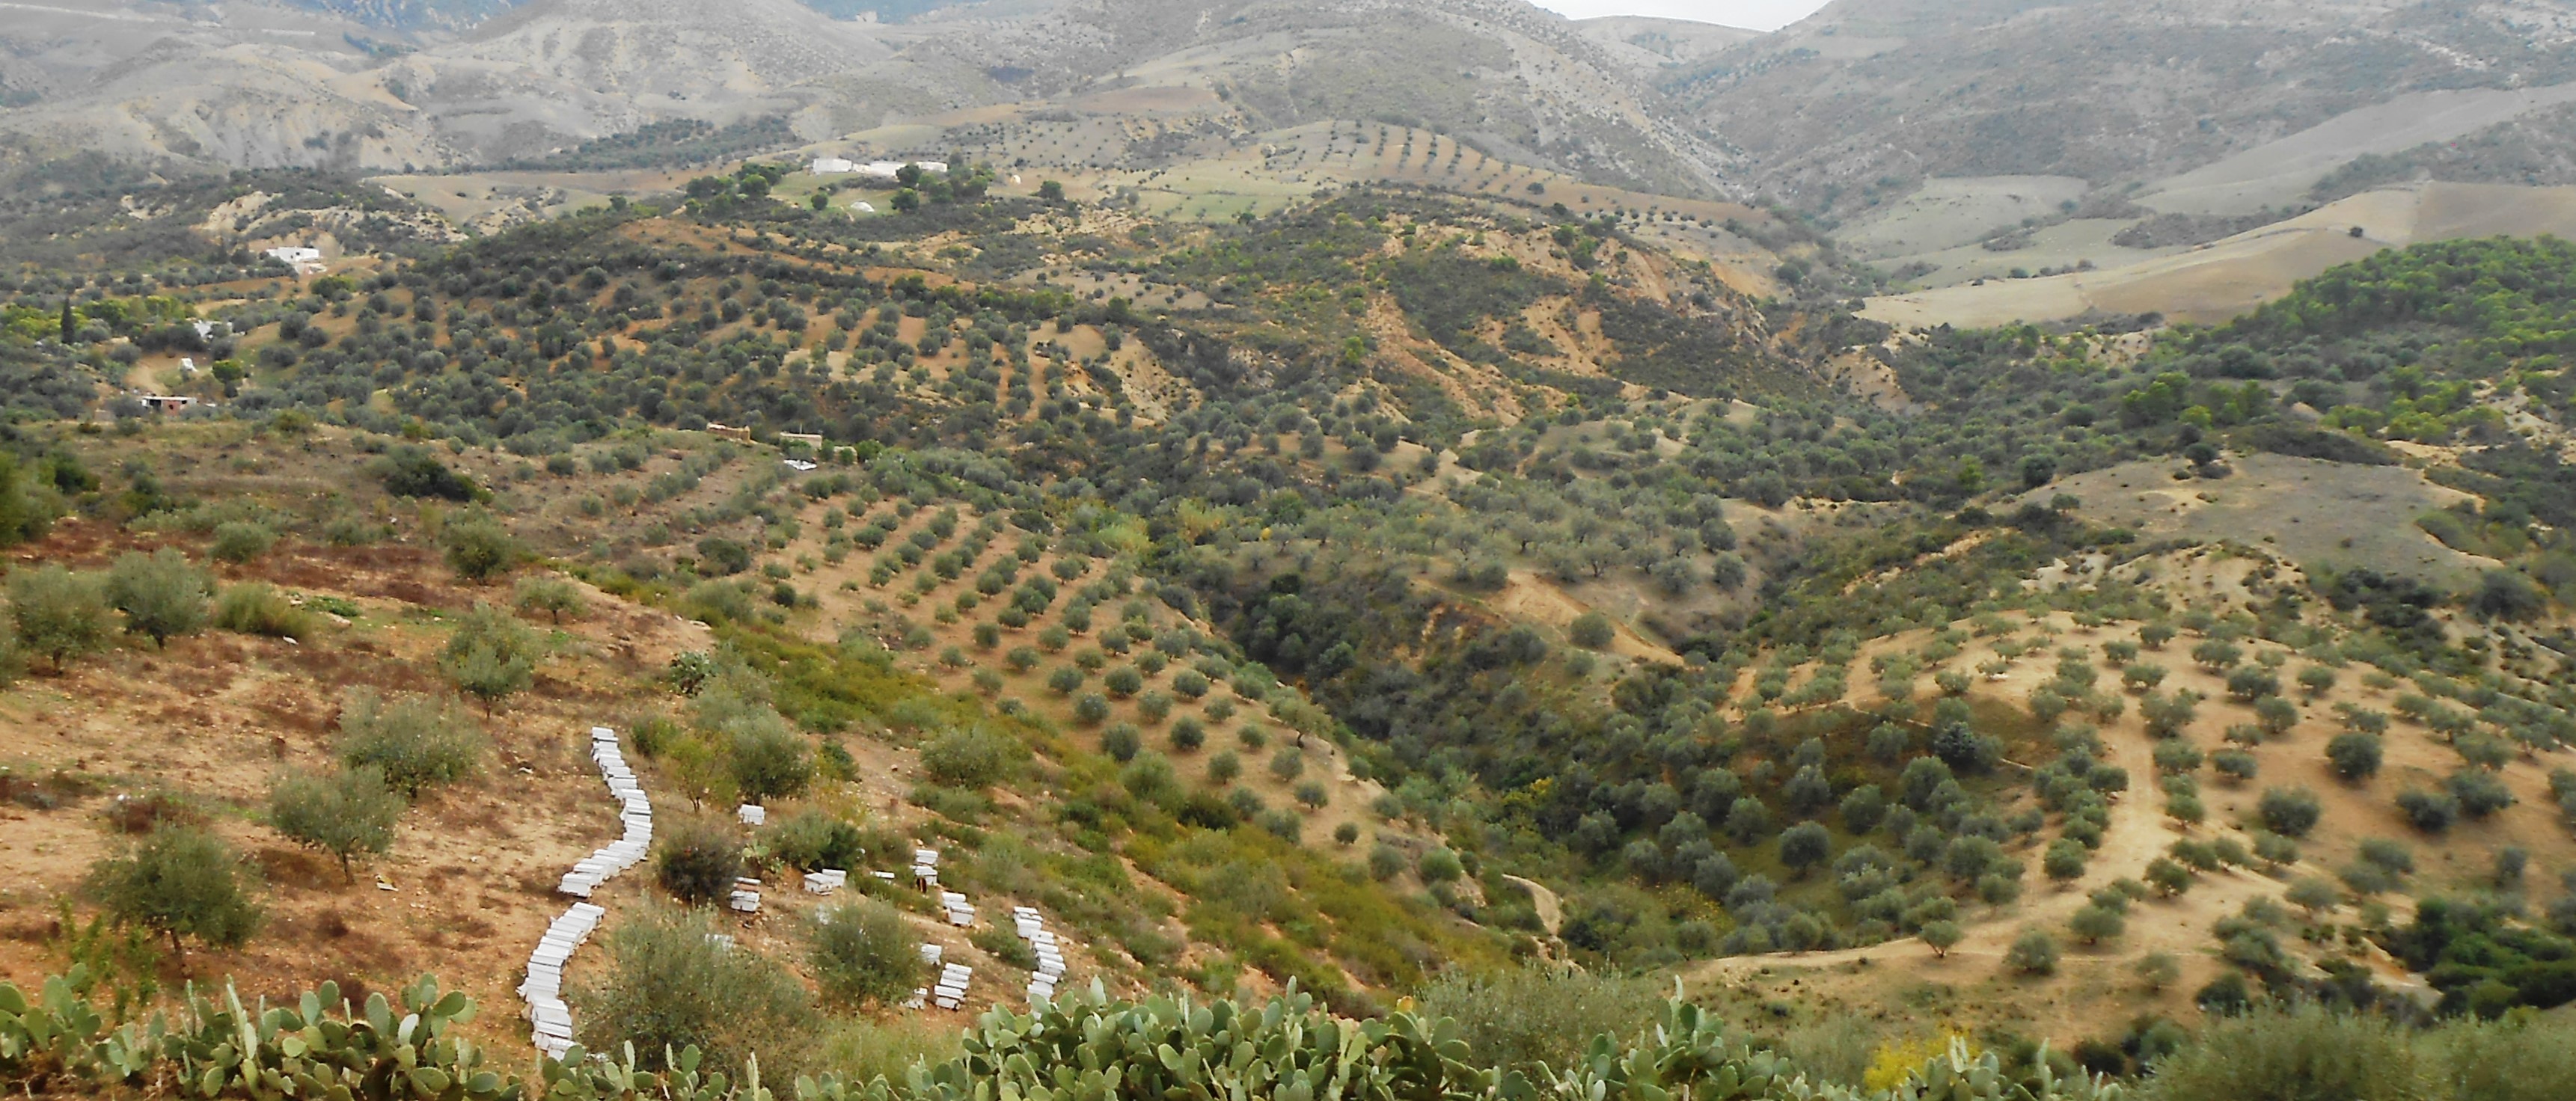 Le système agroforestier dans les zones montagneuses au Nord Ouest Tunisien. 